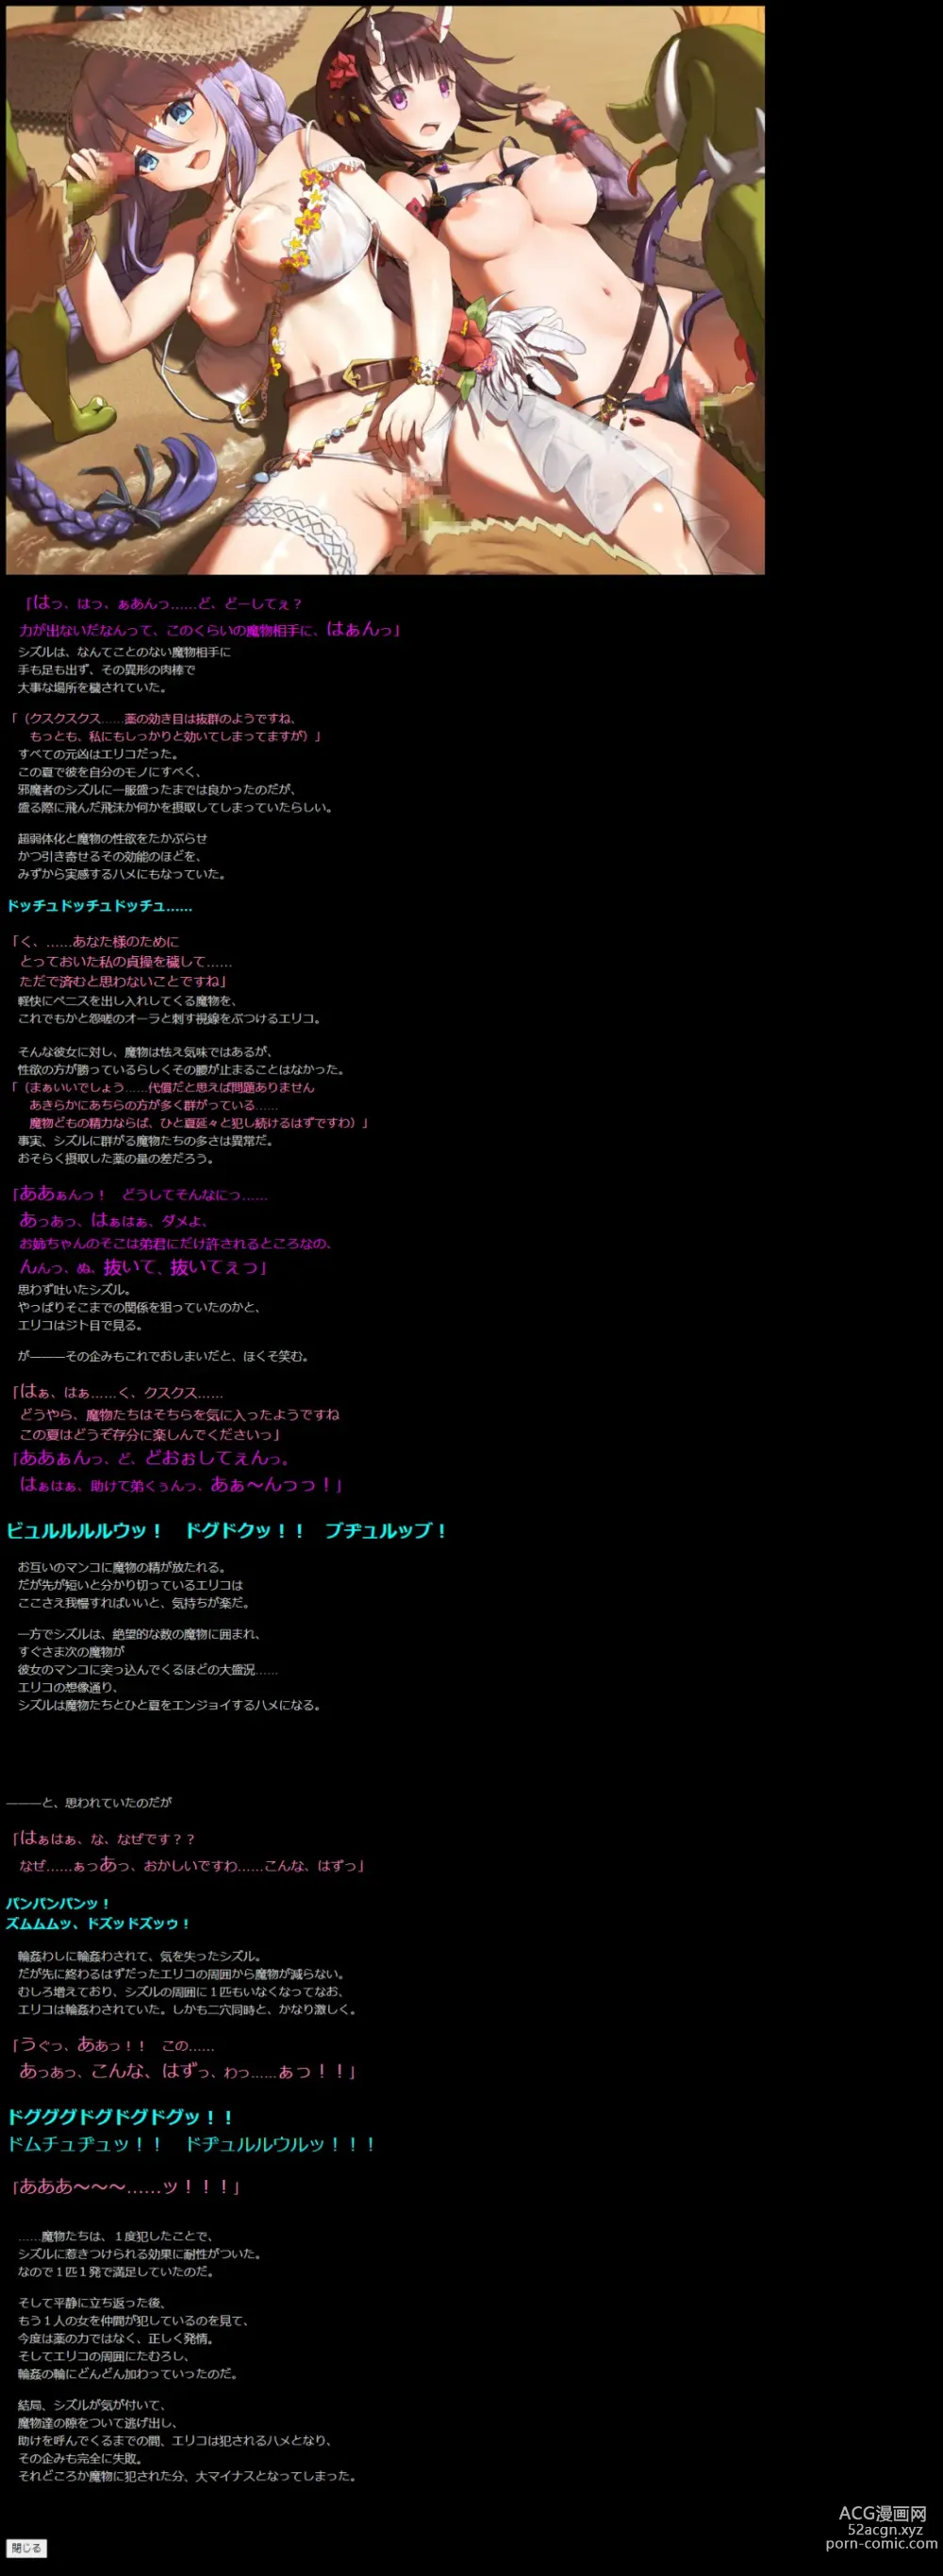 Page 20 of doujinshi Yuumei Chara Kannou Shousetsu CG Shuu No. 423!! Princess Connect Re:Dive 5 HaaHaa CG Shuu